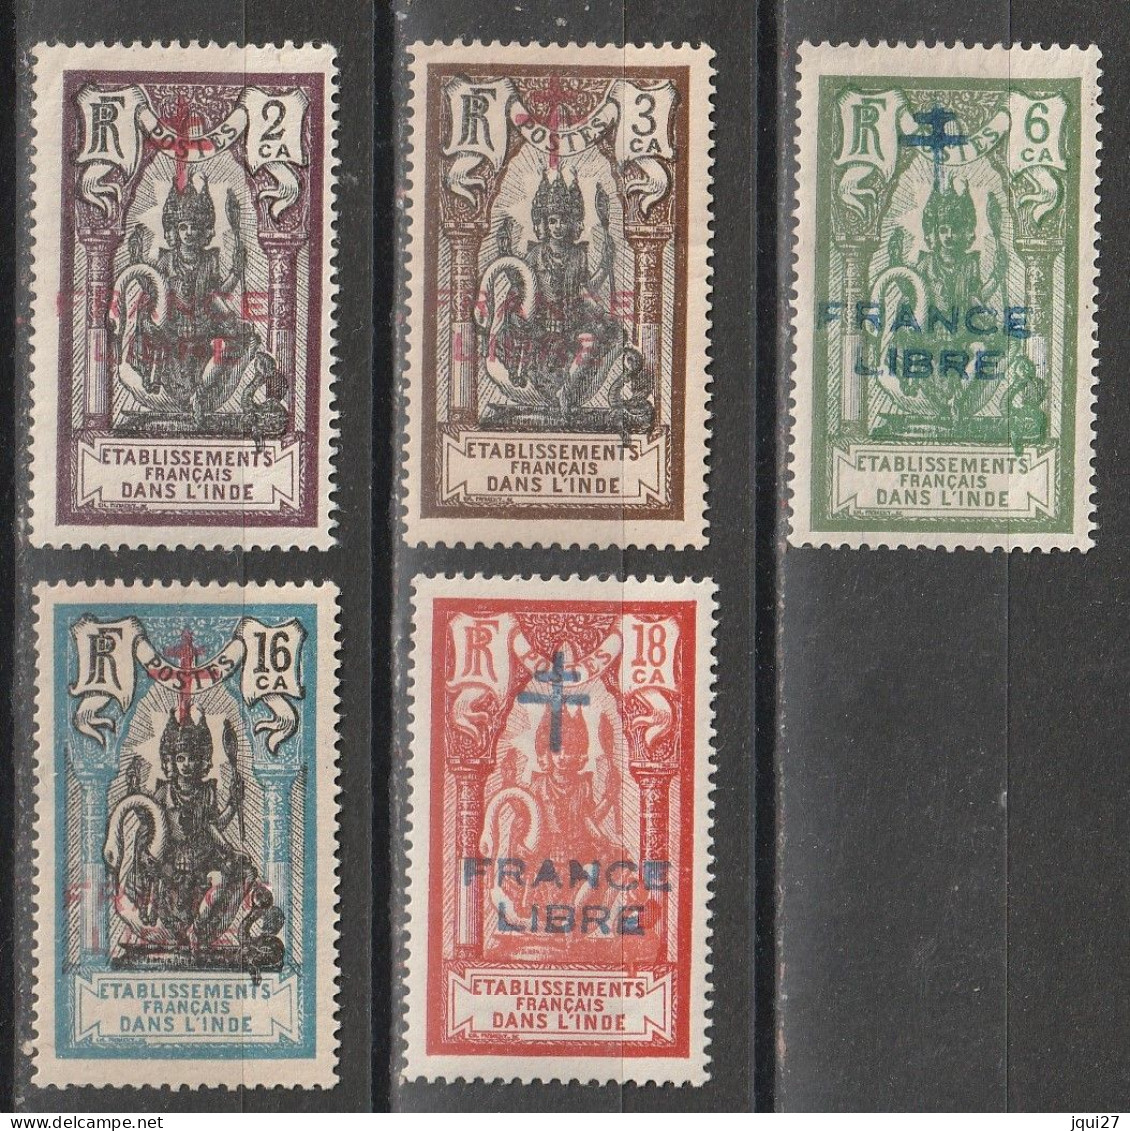 Inde N° 177 - 181 * France Libre - Unused Stamps